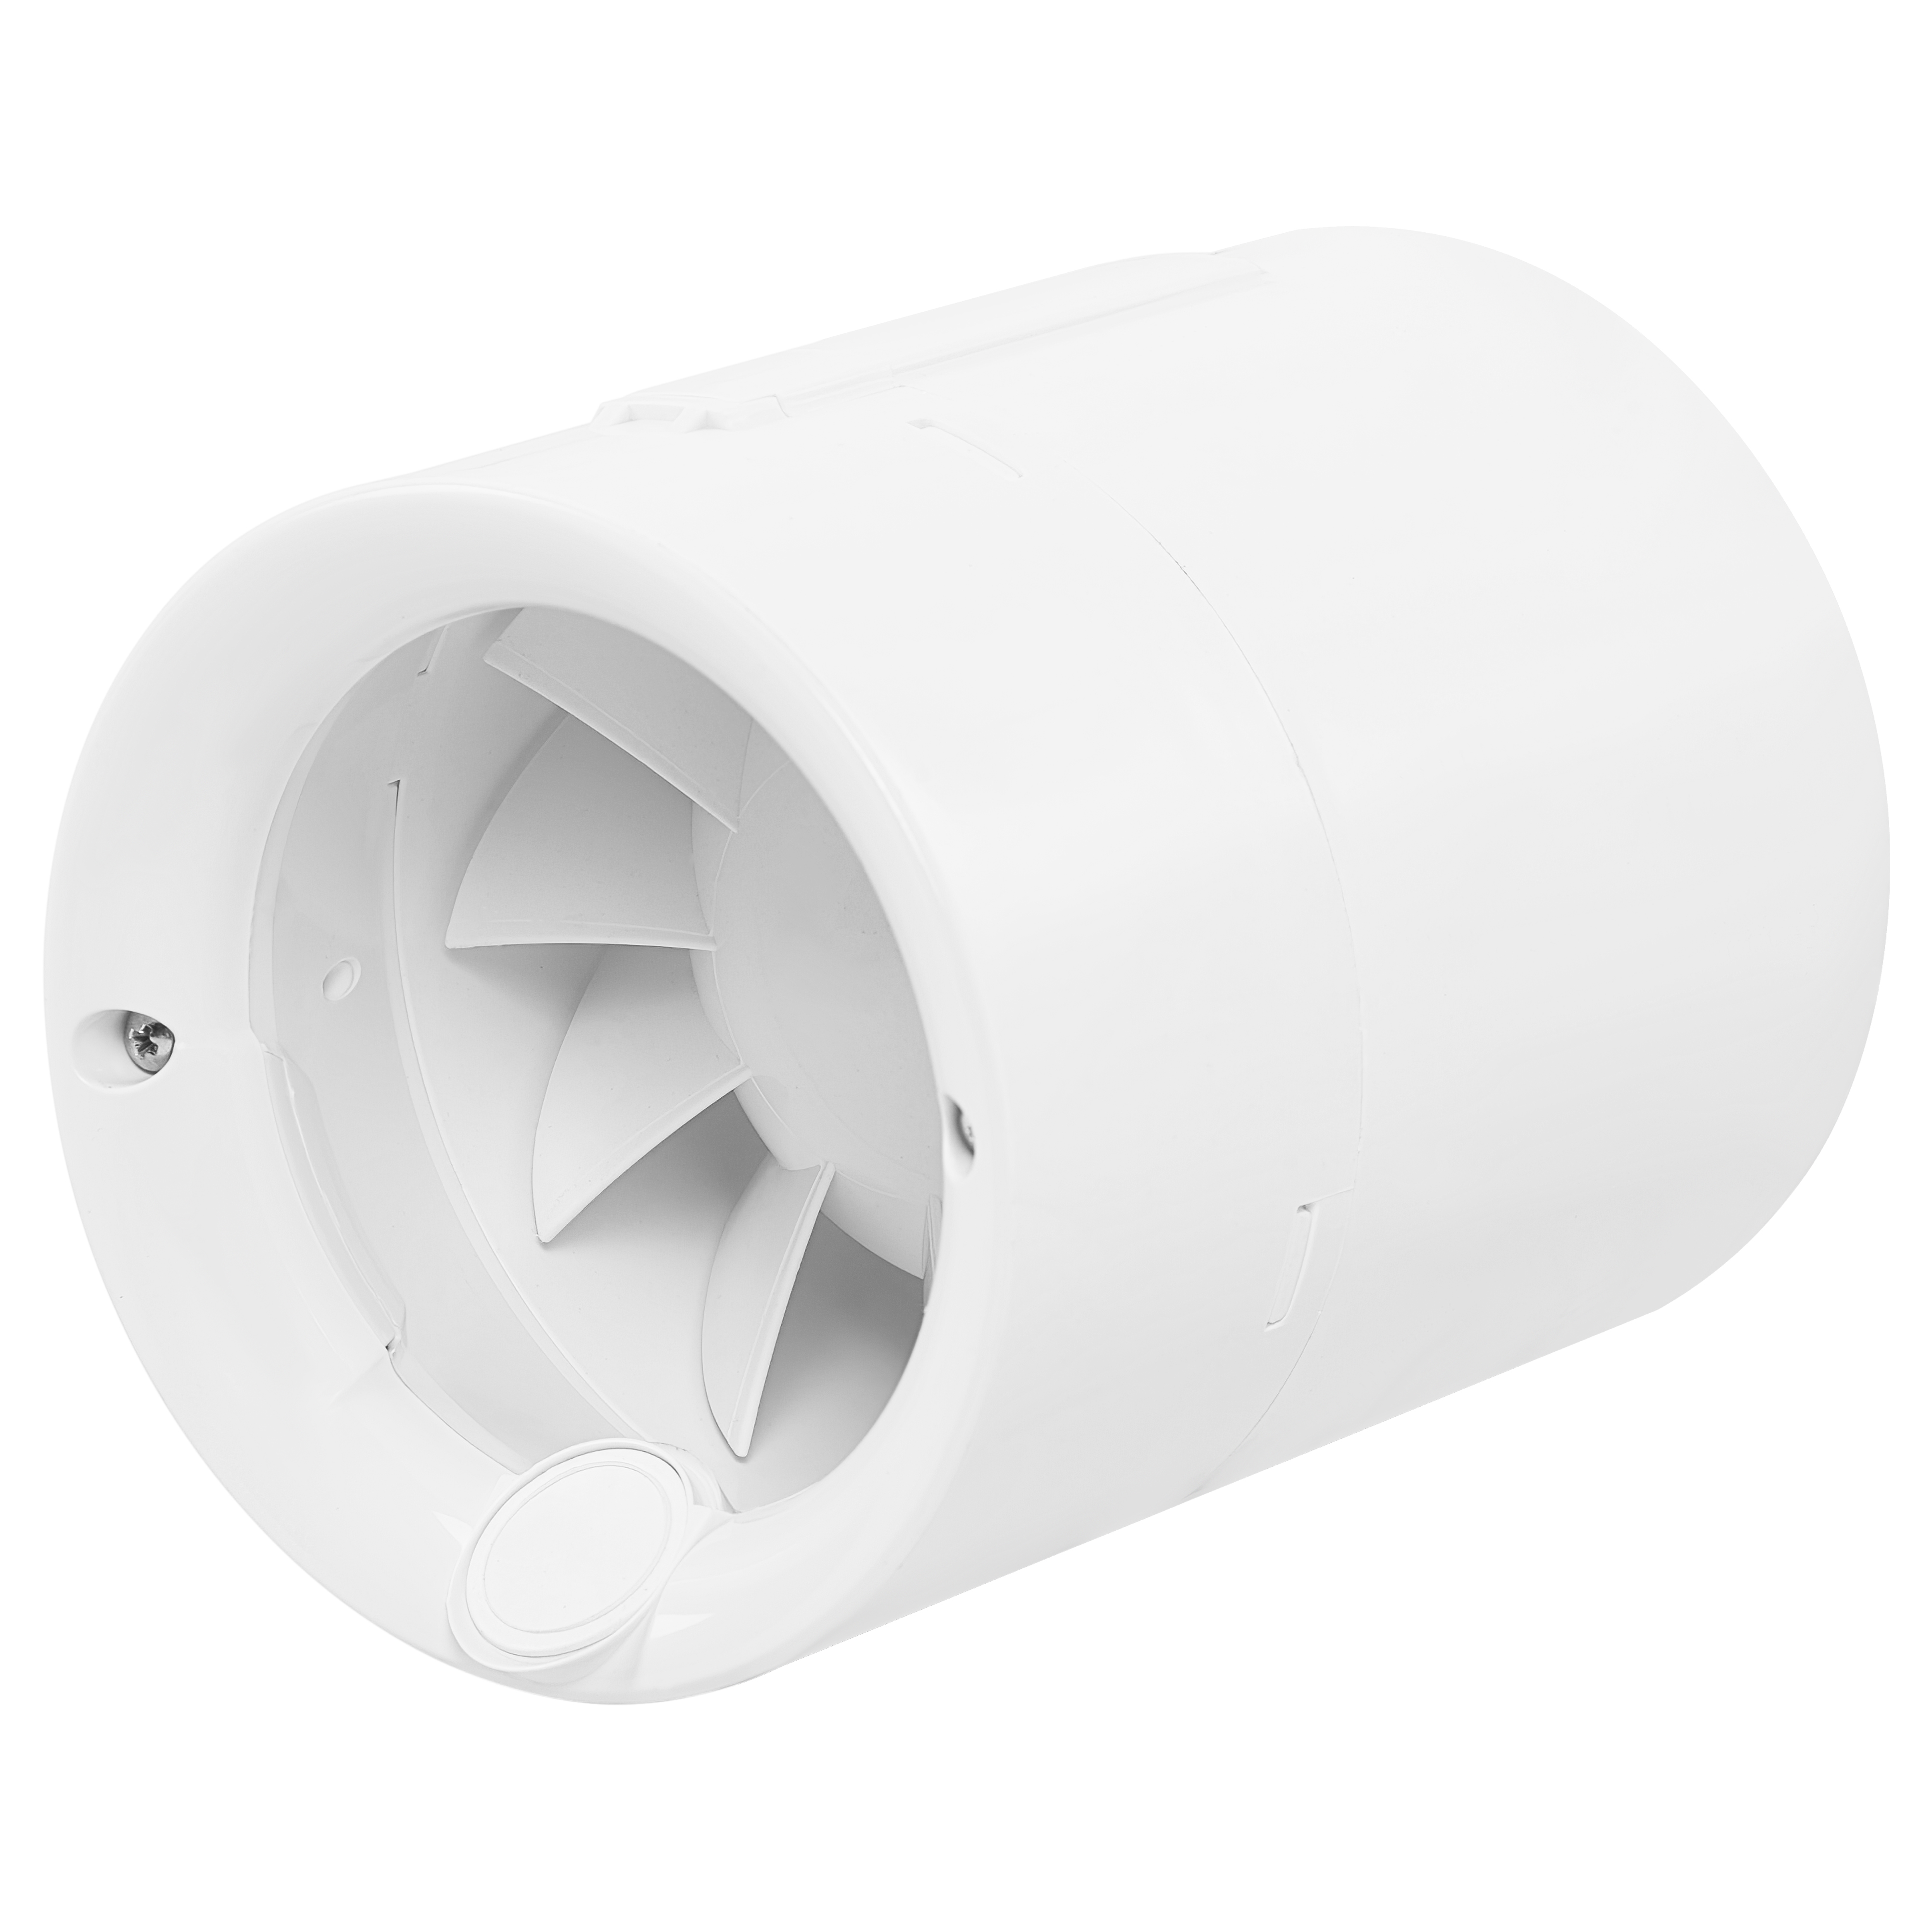 Характеристики канальный вентилятор 100 мм Soler&Palau Silentub-100